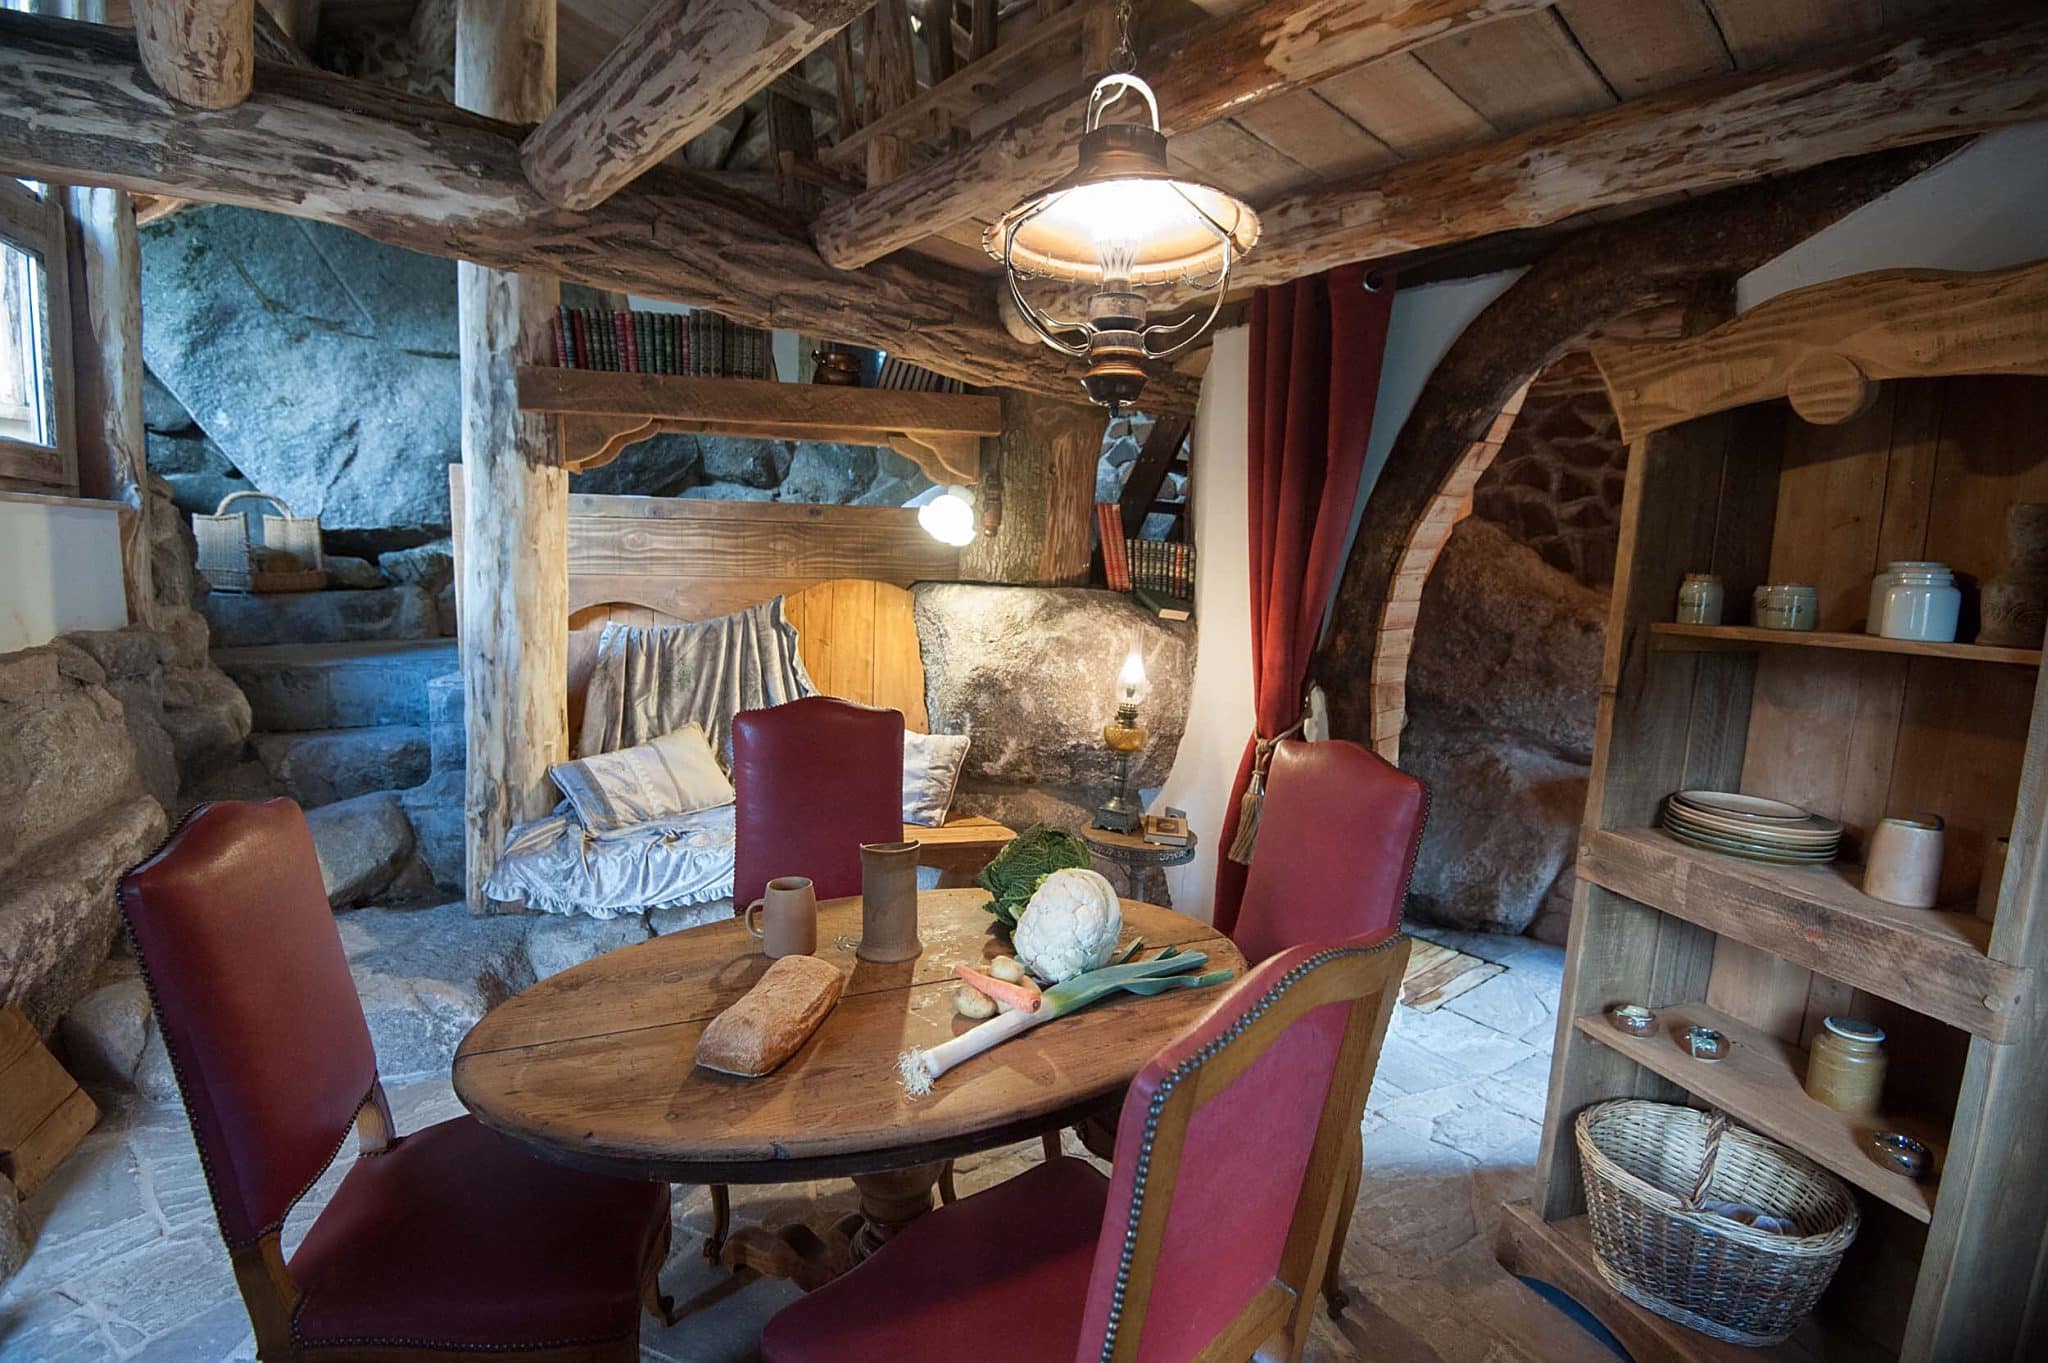 intérieur de la maison du hobbit dans le coin repas avec une table ronde et 4 chaises. de la nourriture est sur la table